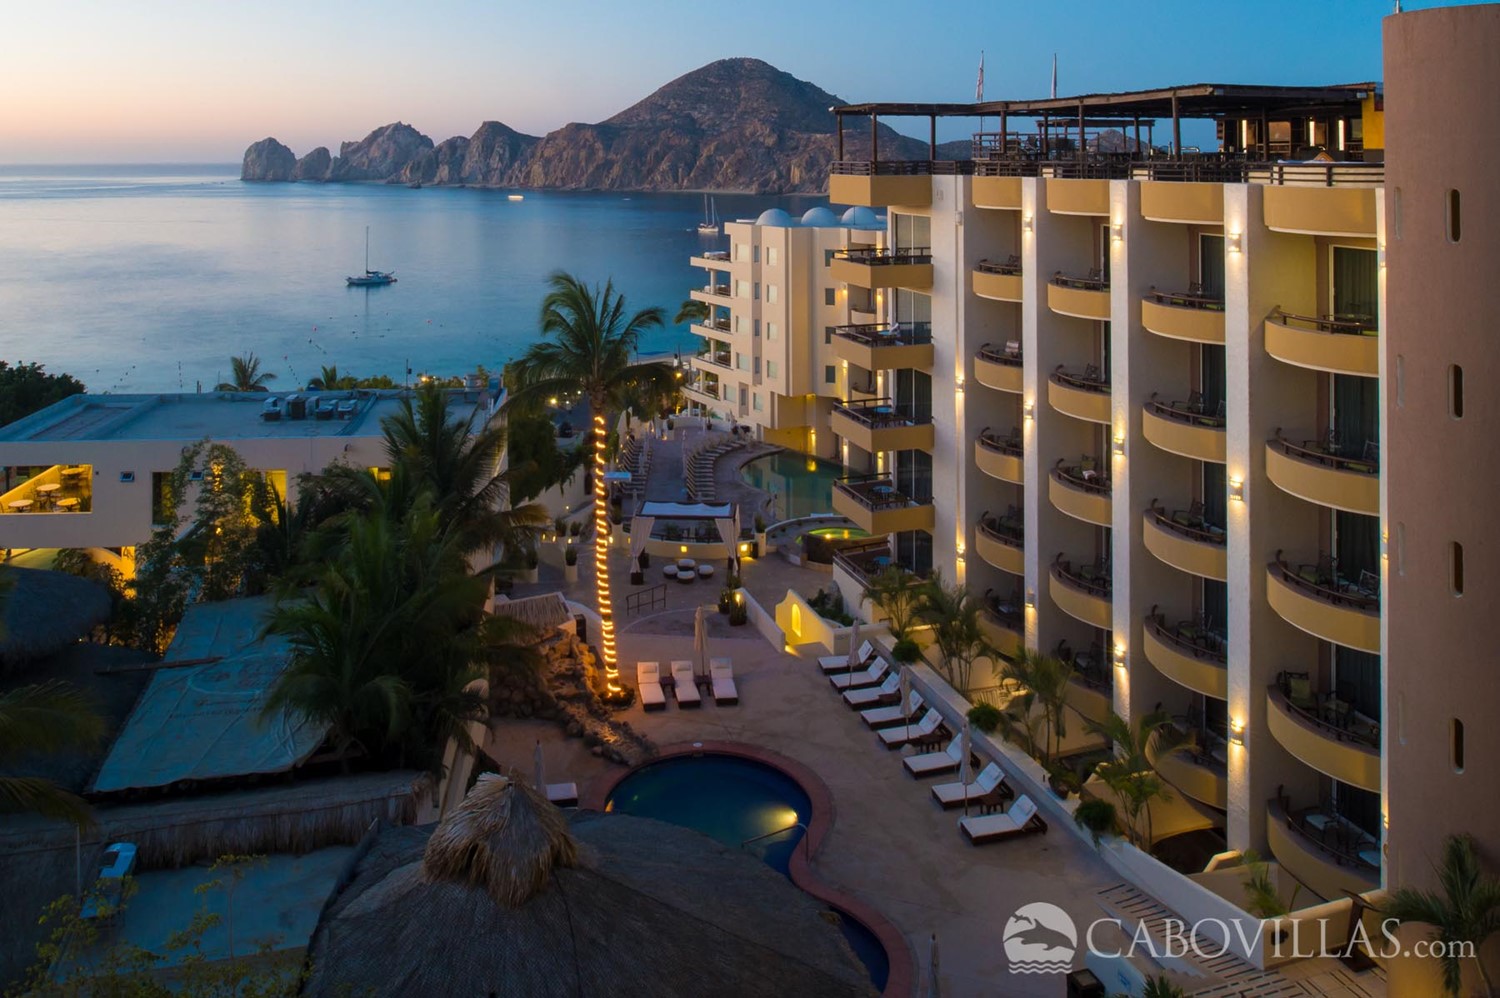 Cabo Villas Beach Resort Penthouse 7022 - Cabo San Lucas, Mexico